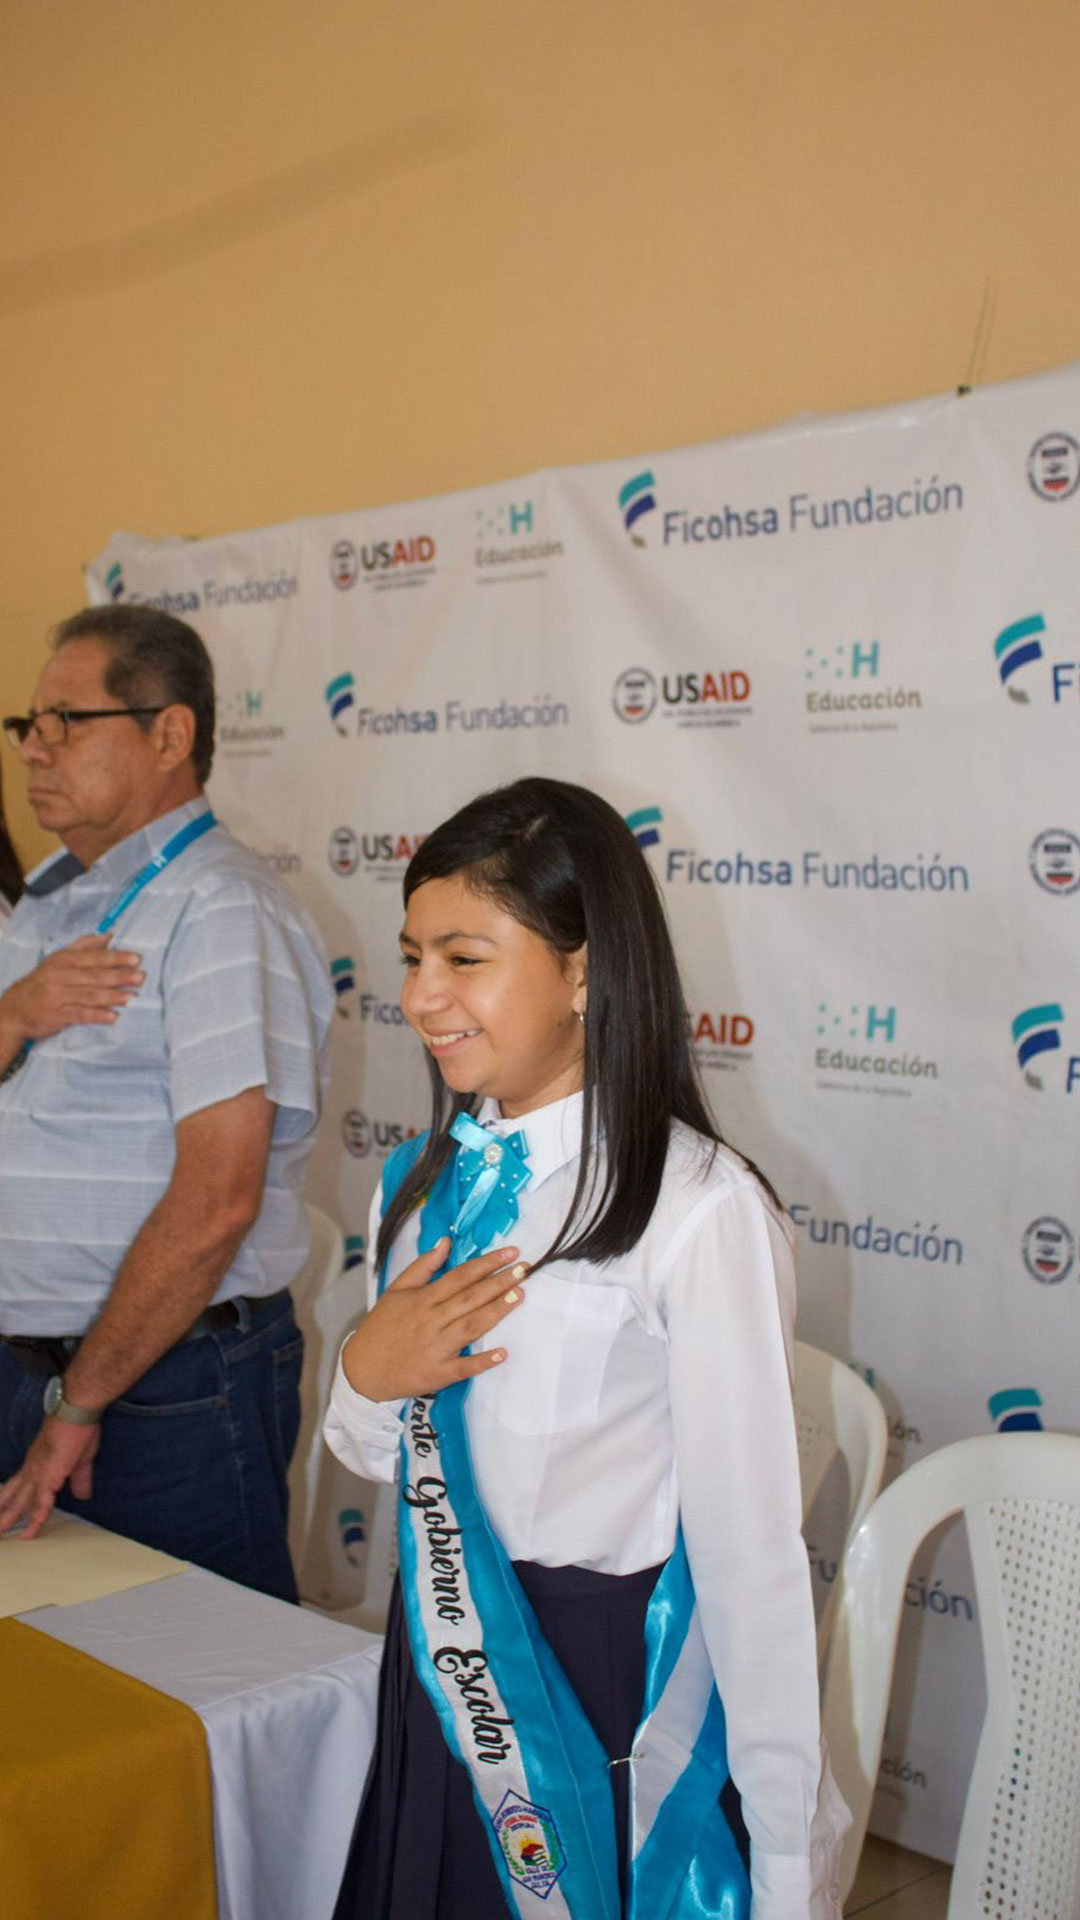 Ficohsa Fundación hace entrega del segundo centro que suman 33 aulas como parte de la “Alianza por la Educación” liderada por USAID